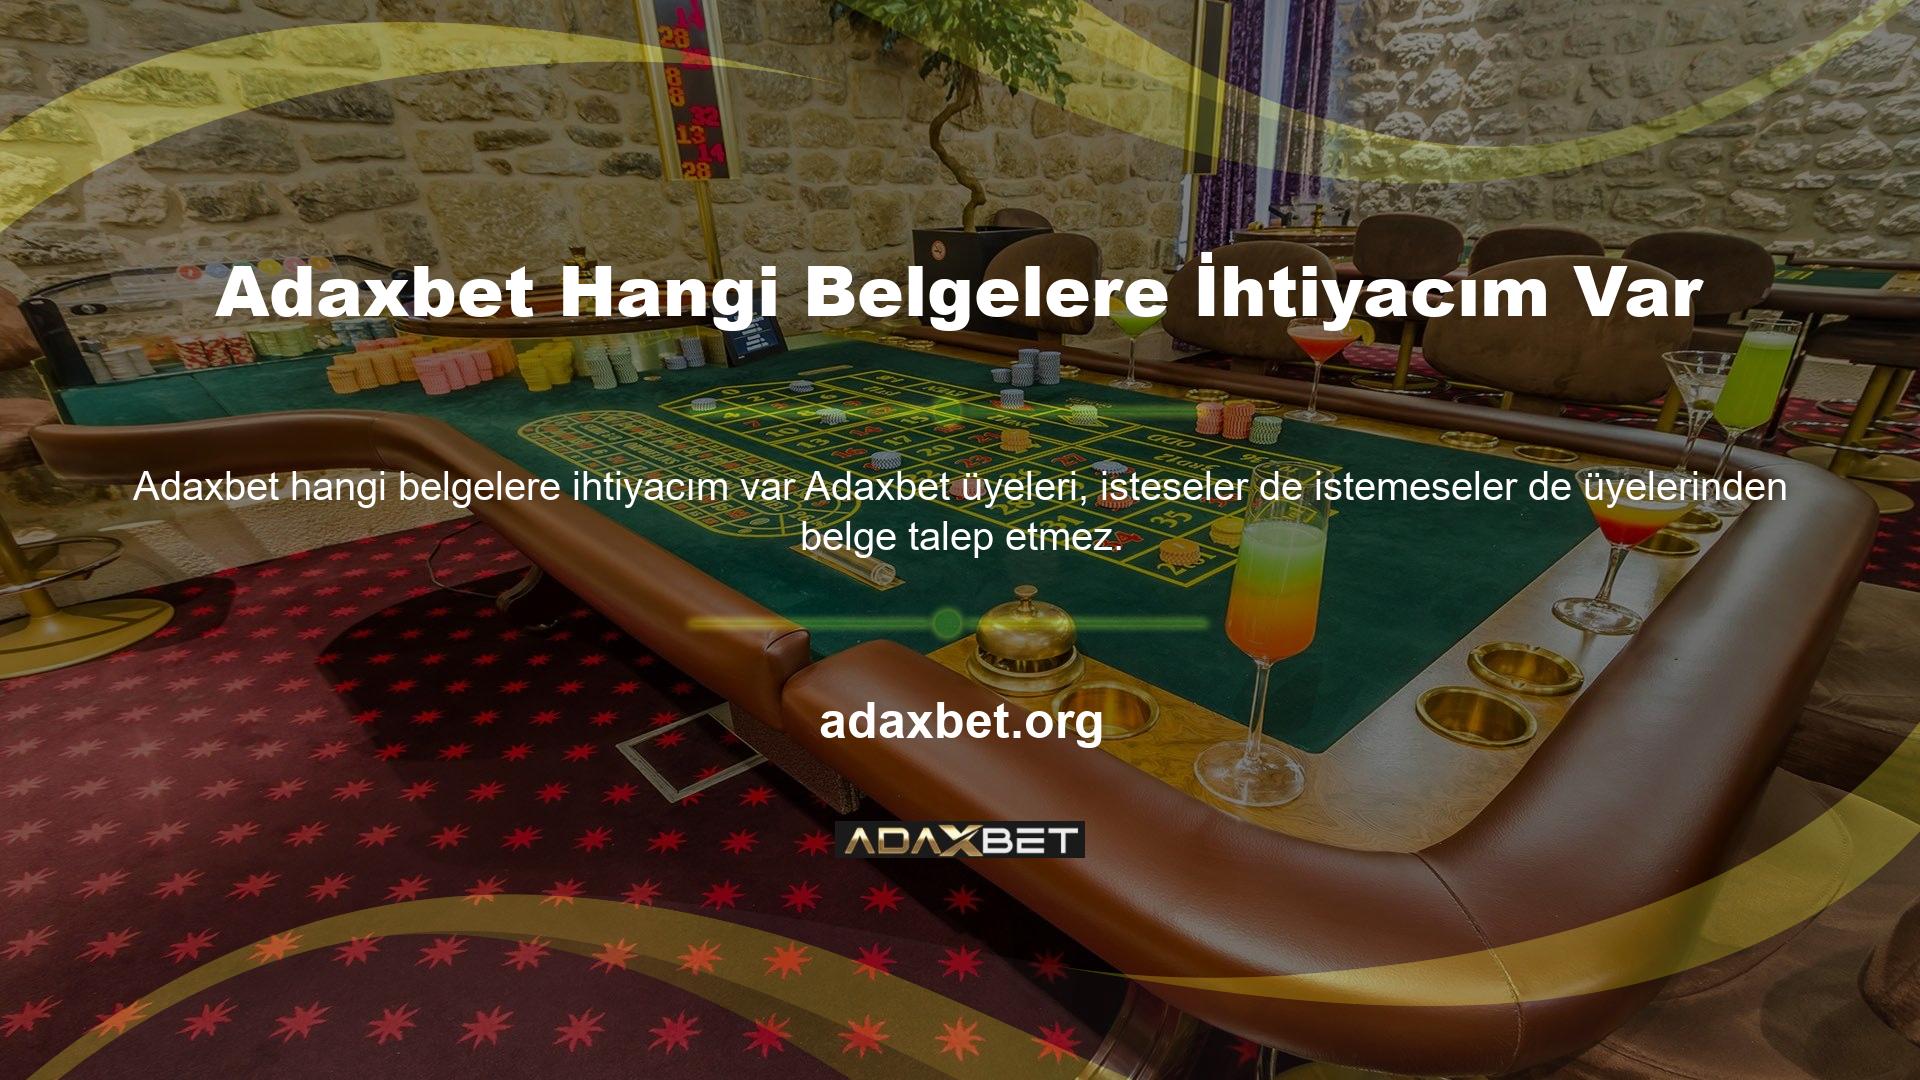 Adaxbet, katılmak için herhangi bir evrak gerektirmeyen casino sitelerinden biridir